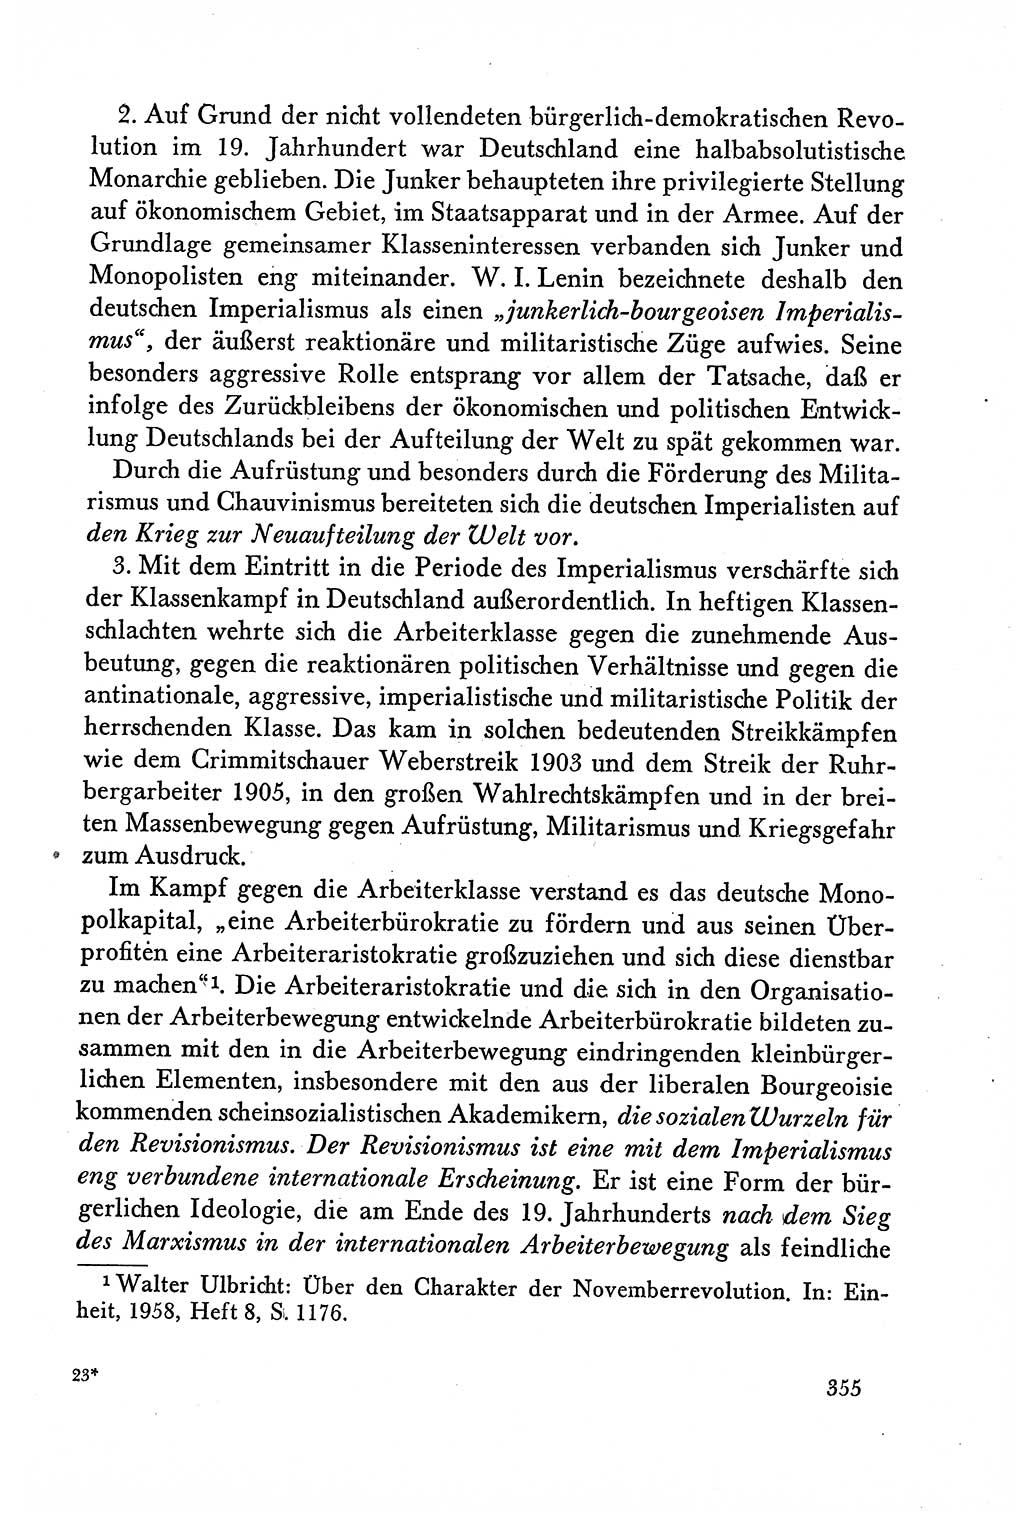 Dokumente der Sozialistischen Einheitspartei Deutschlands (SED) [Deutsche Demokratische Republik (DDR)] 1958-1959, Seite 355 (Dok. SED DDR 1958-1959, S. 355)